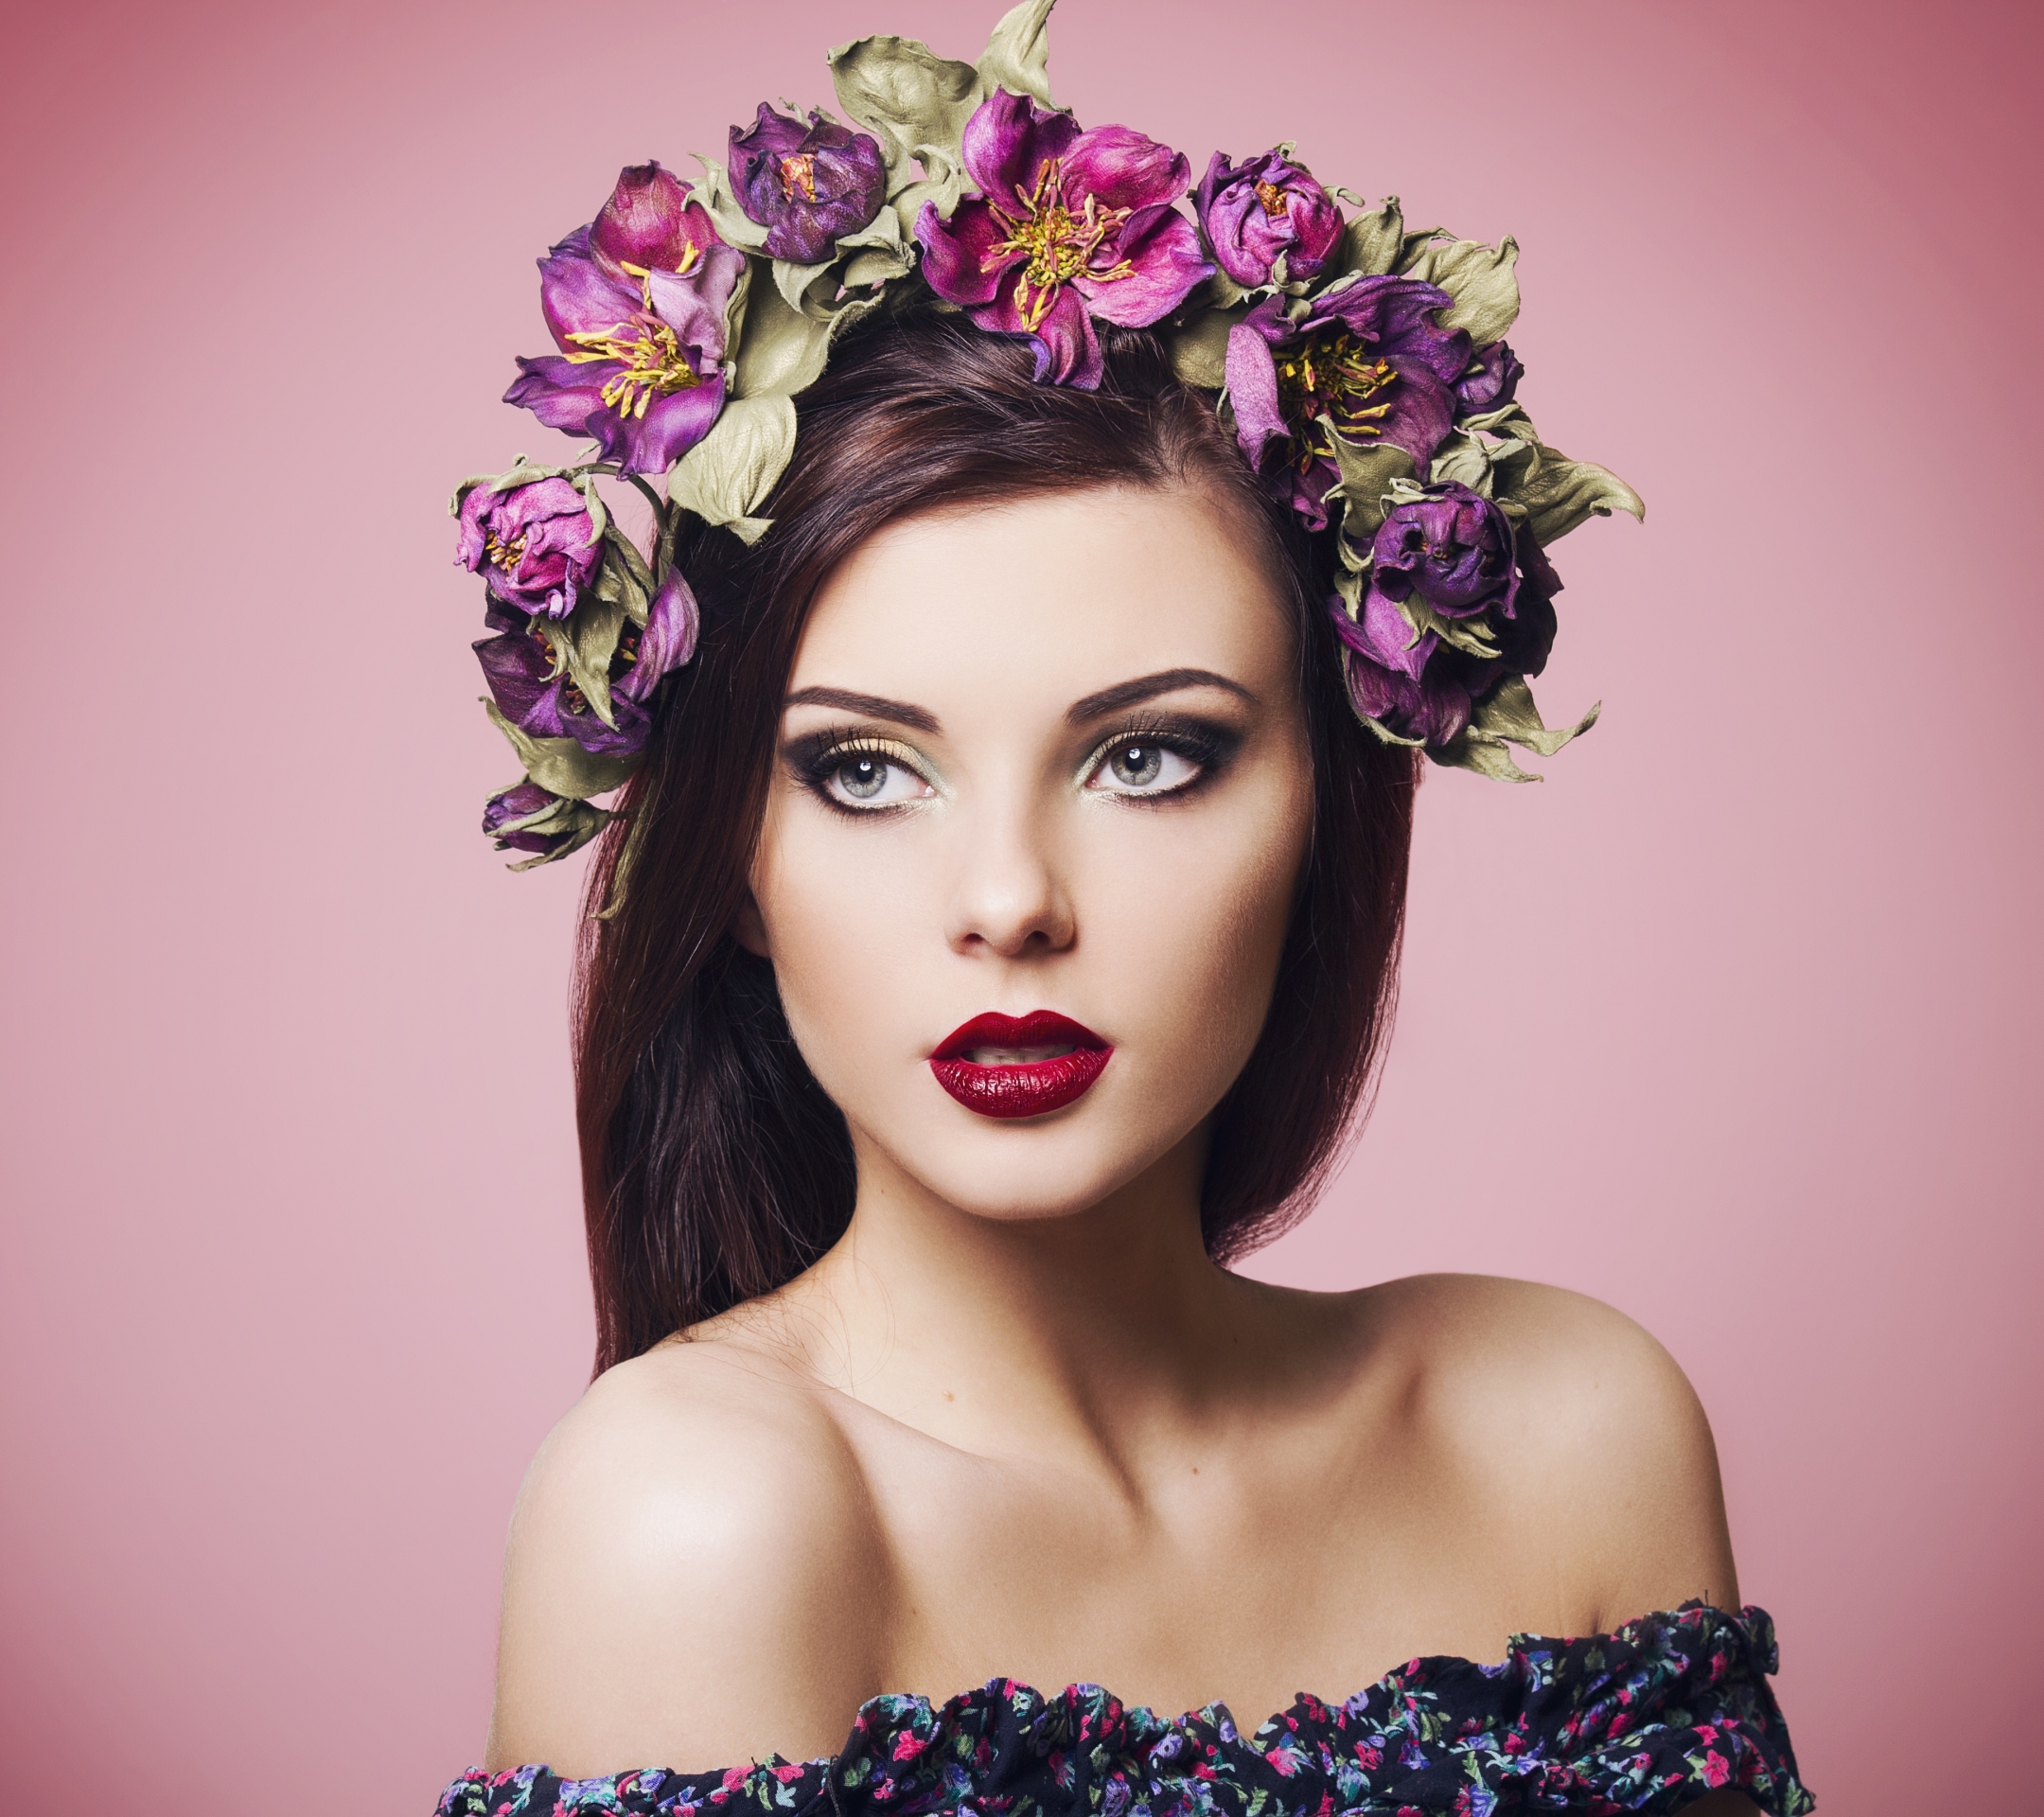 Free download wallpaper Flower, Wreath, Brunette, Model, Women, Blue Eyes, Lipstick on your PC desktop